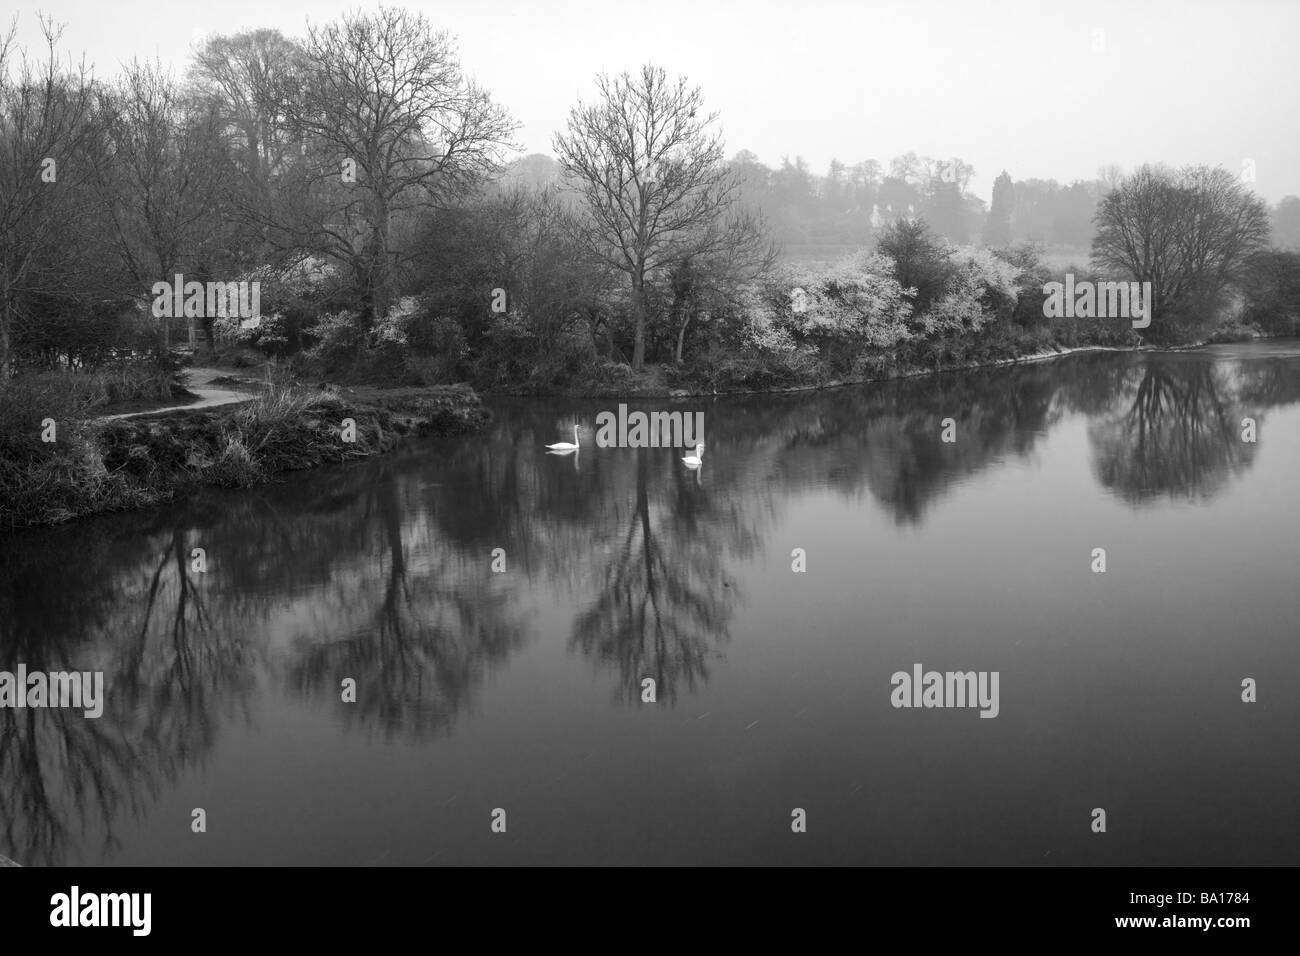 Fluss Stour Wimborne Dorset mit Schwänen und Reflexionen der Bäume im Wasser an nebligen kalten April Morgen, schwarz / weiß Stockfoto